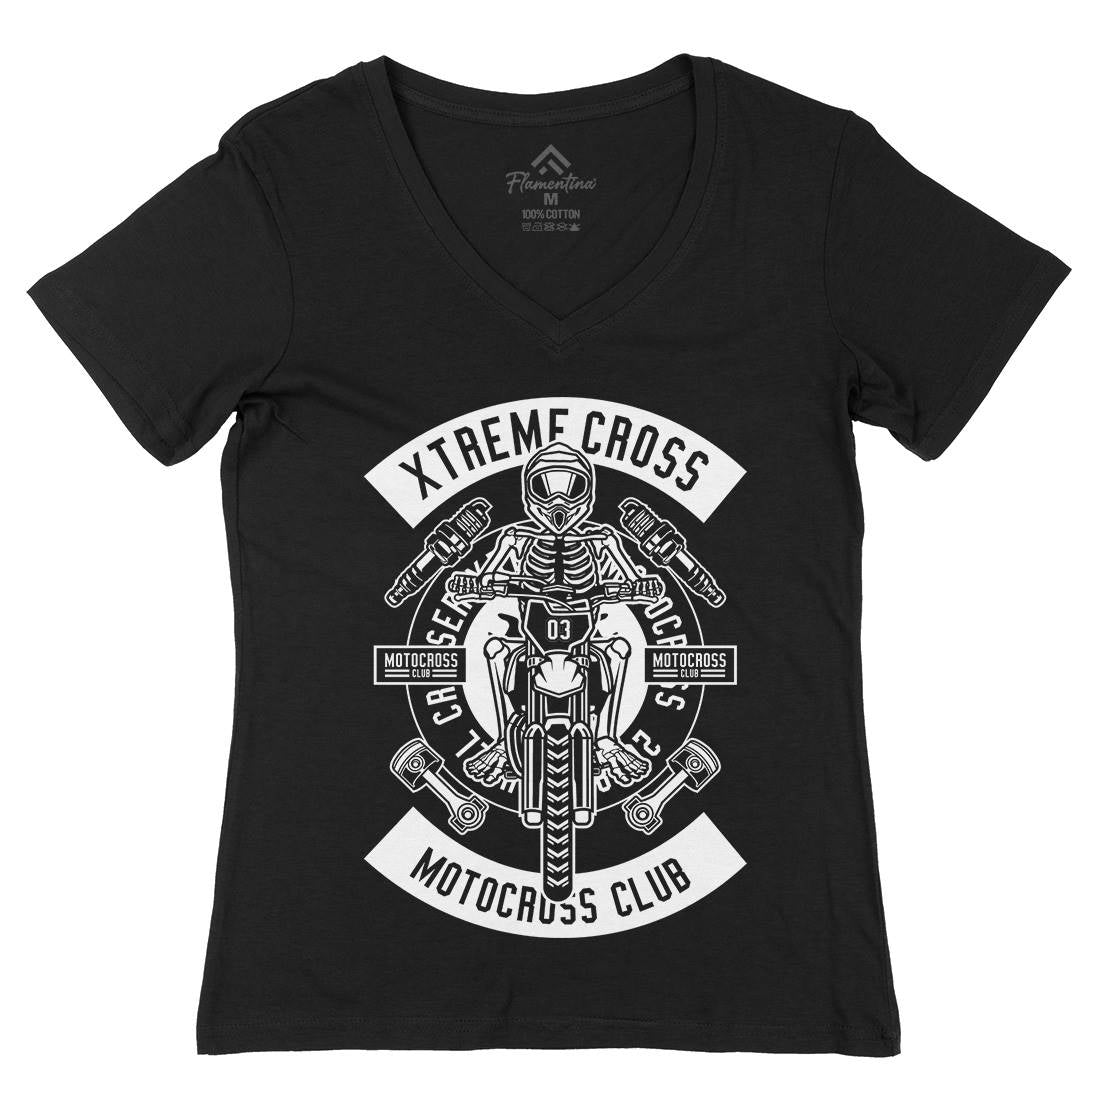 Xtreme Cross Womens Organic V-Neck T-Shirt Motorcycles B676